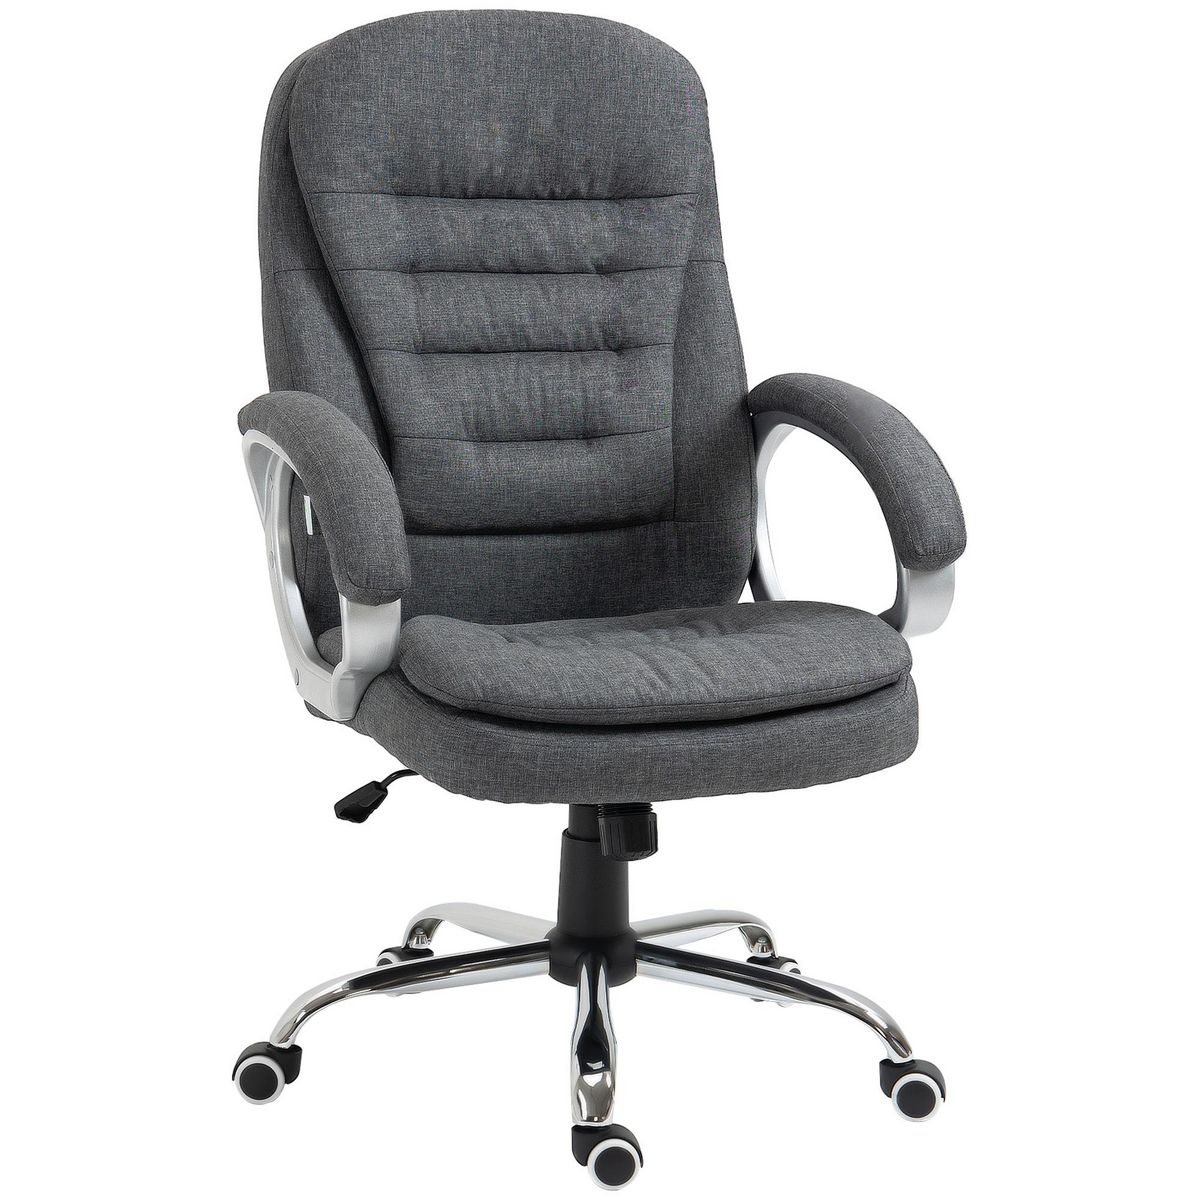 HOMCOM Fauteuil de bureau manager chaise de bureau ergonomique double coussin réglable roulettes toile lin gris foncé